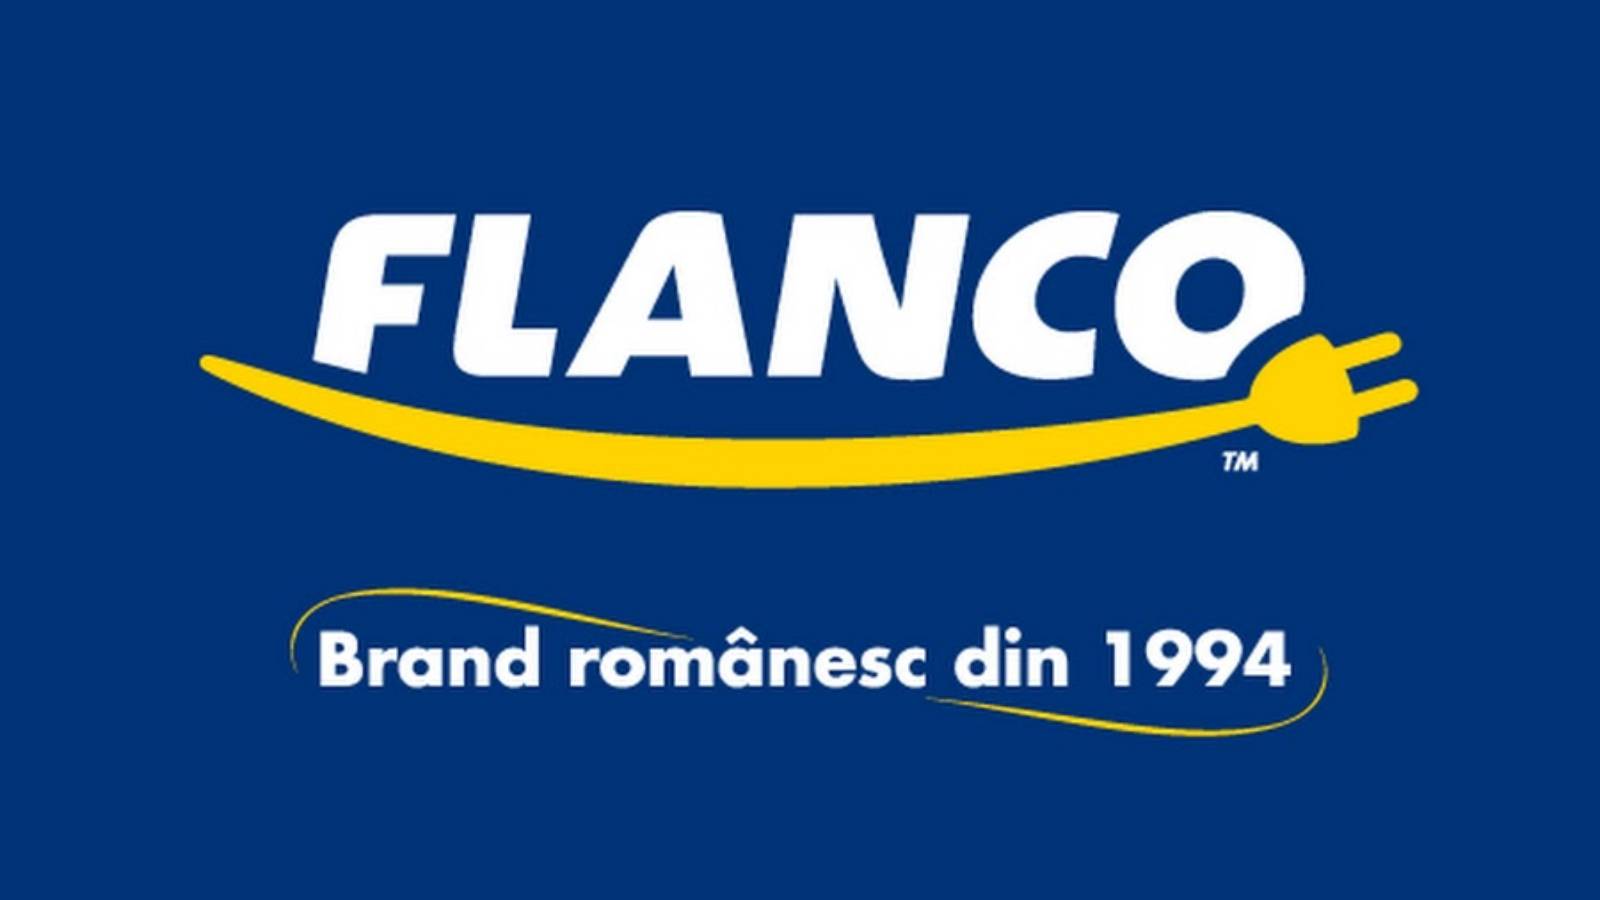 Rabaty Flanco Pasta Produkty za pół ceny